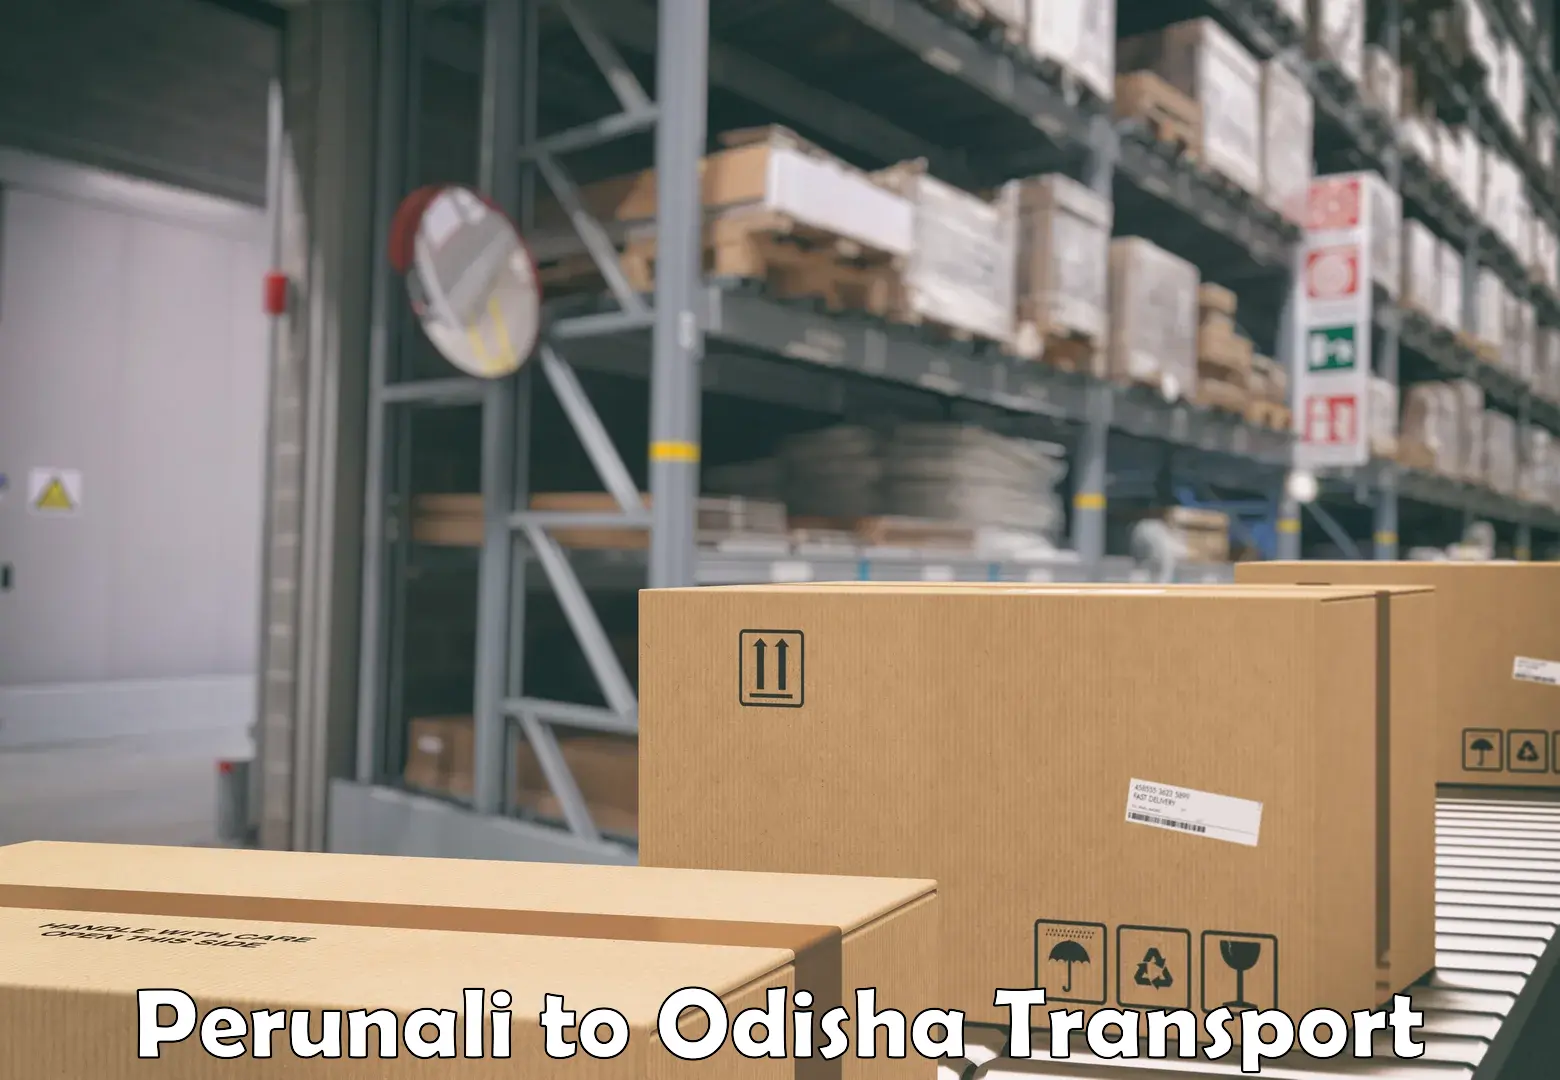 Truck transport companies in India Perunali to Odisha